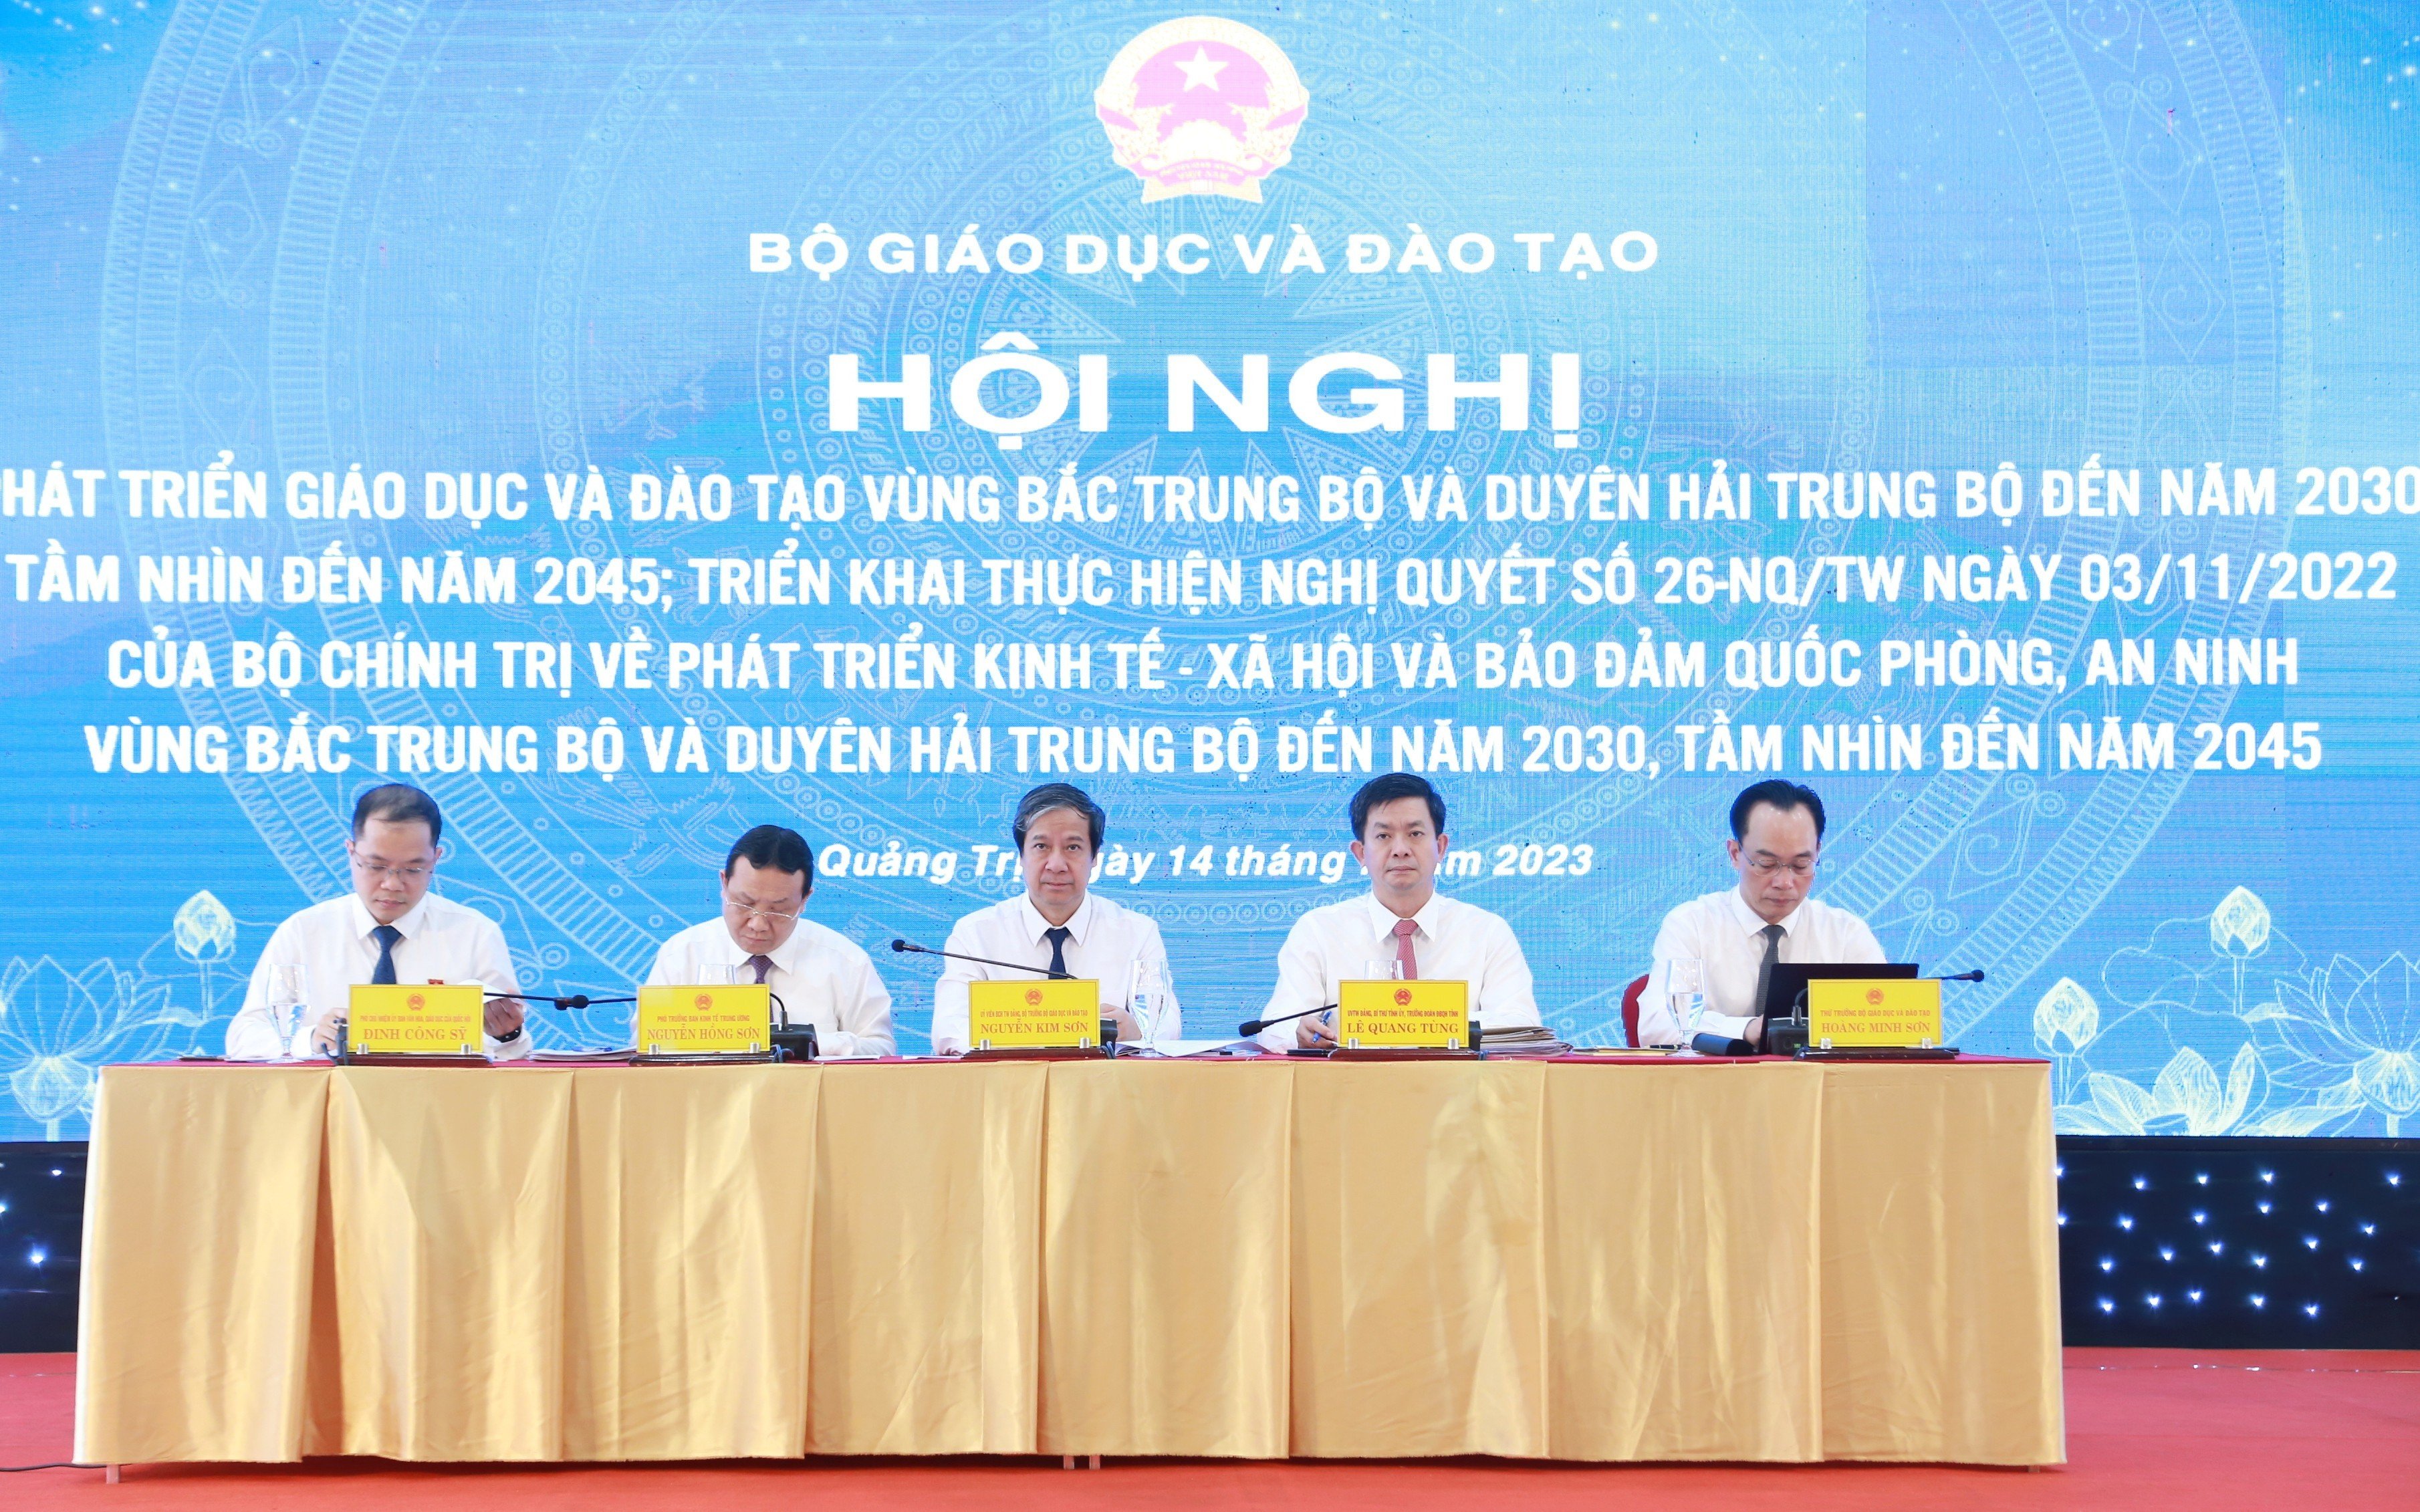 Bộ trưởng Nguyễn Kim Sơn chủ trì Hội nghị phát triển giáo dục và đào tạo vùng Bắc Trung bộ và Duyên hải miền Trung đến năm 2030, tầm nhìn đến năm 2045.